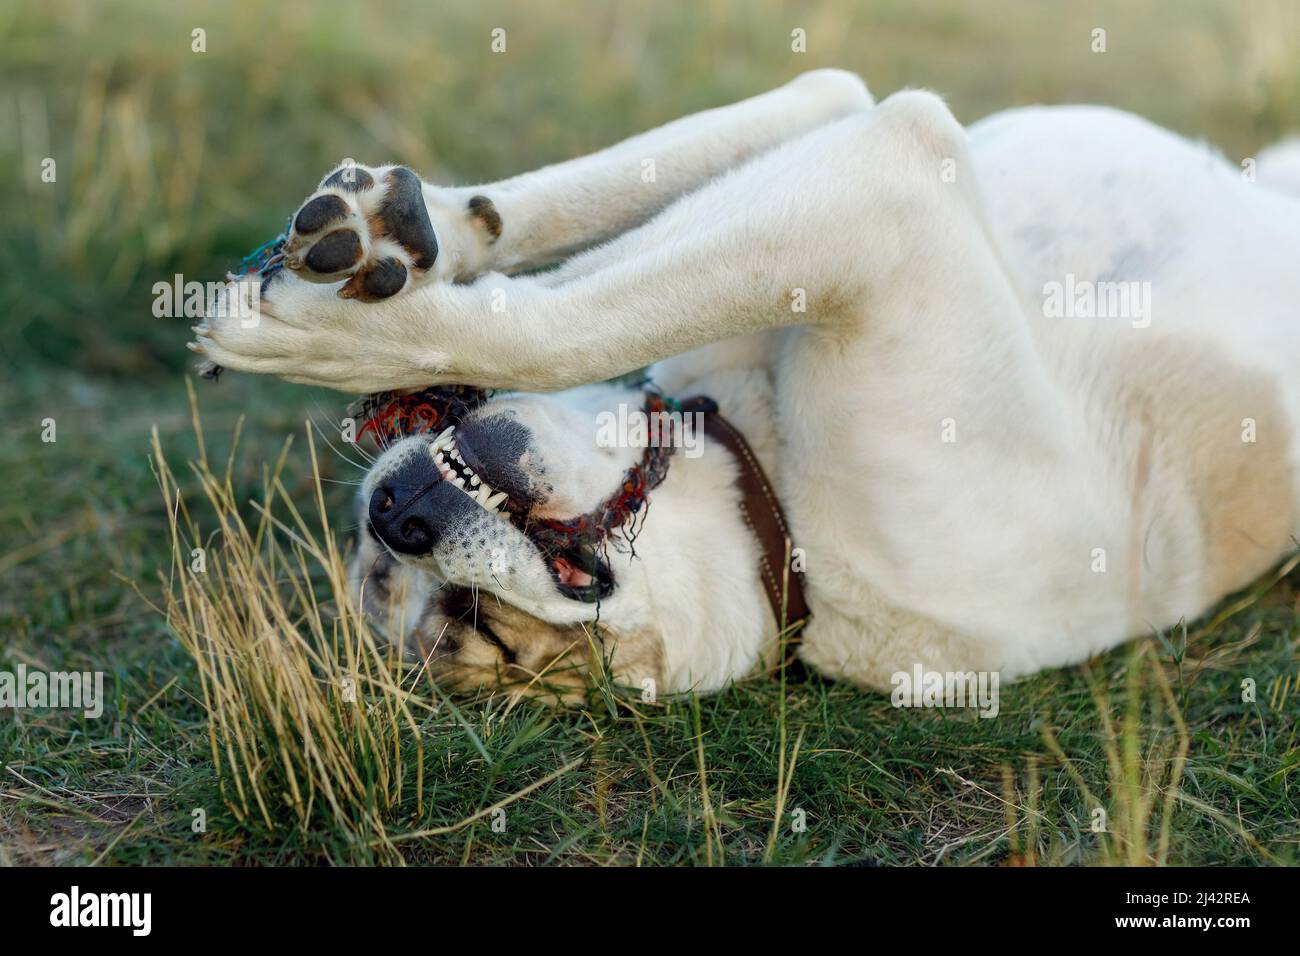 Le berger asiatique se trouve dans la prairie à l'arrière, tenant une corde dans ses pattes et essayant de la morder. Banque D'Images